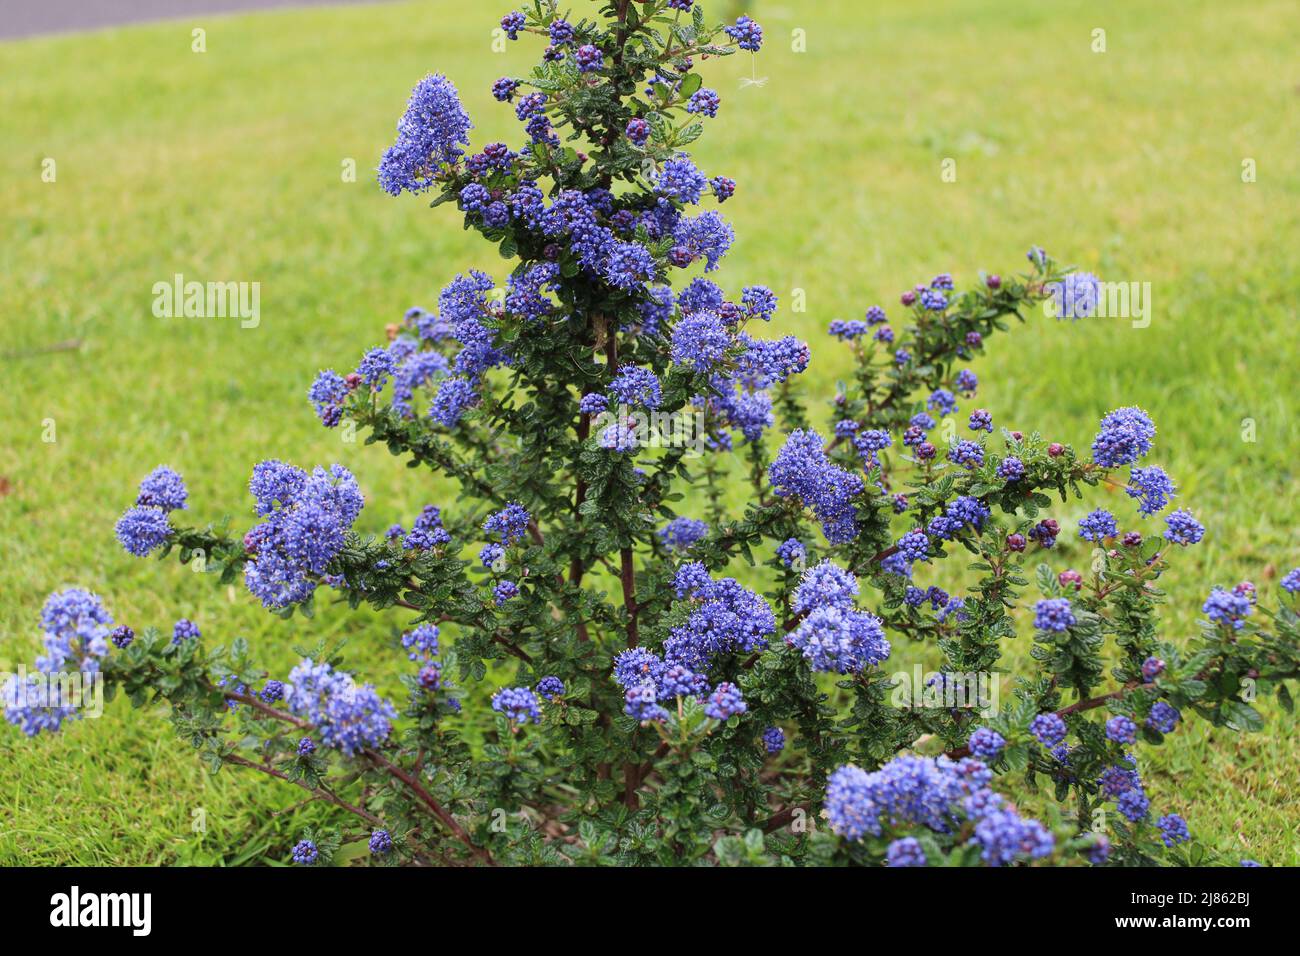 L'arbuste Ceanothus Dark Star également connu sous le nom de lilas de Californie ou de brousse de savon avec ses fleurs pourpres bleu profond et ses feuilles ovales Banque D'Images